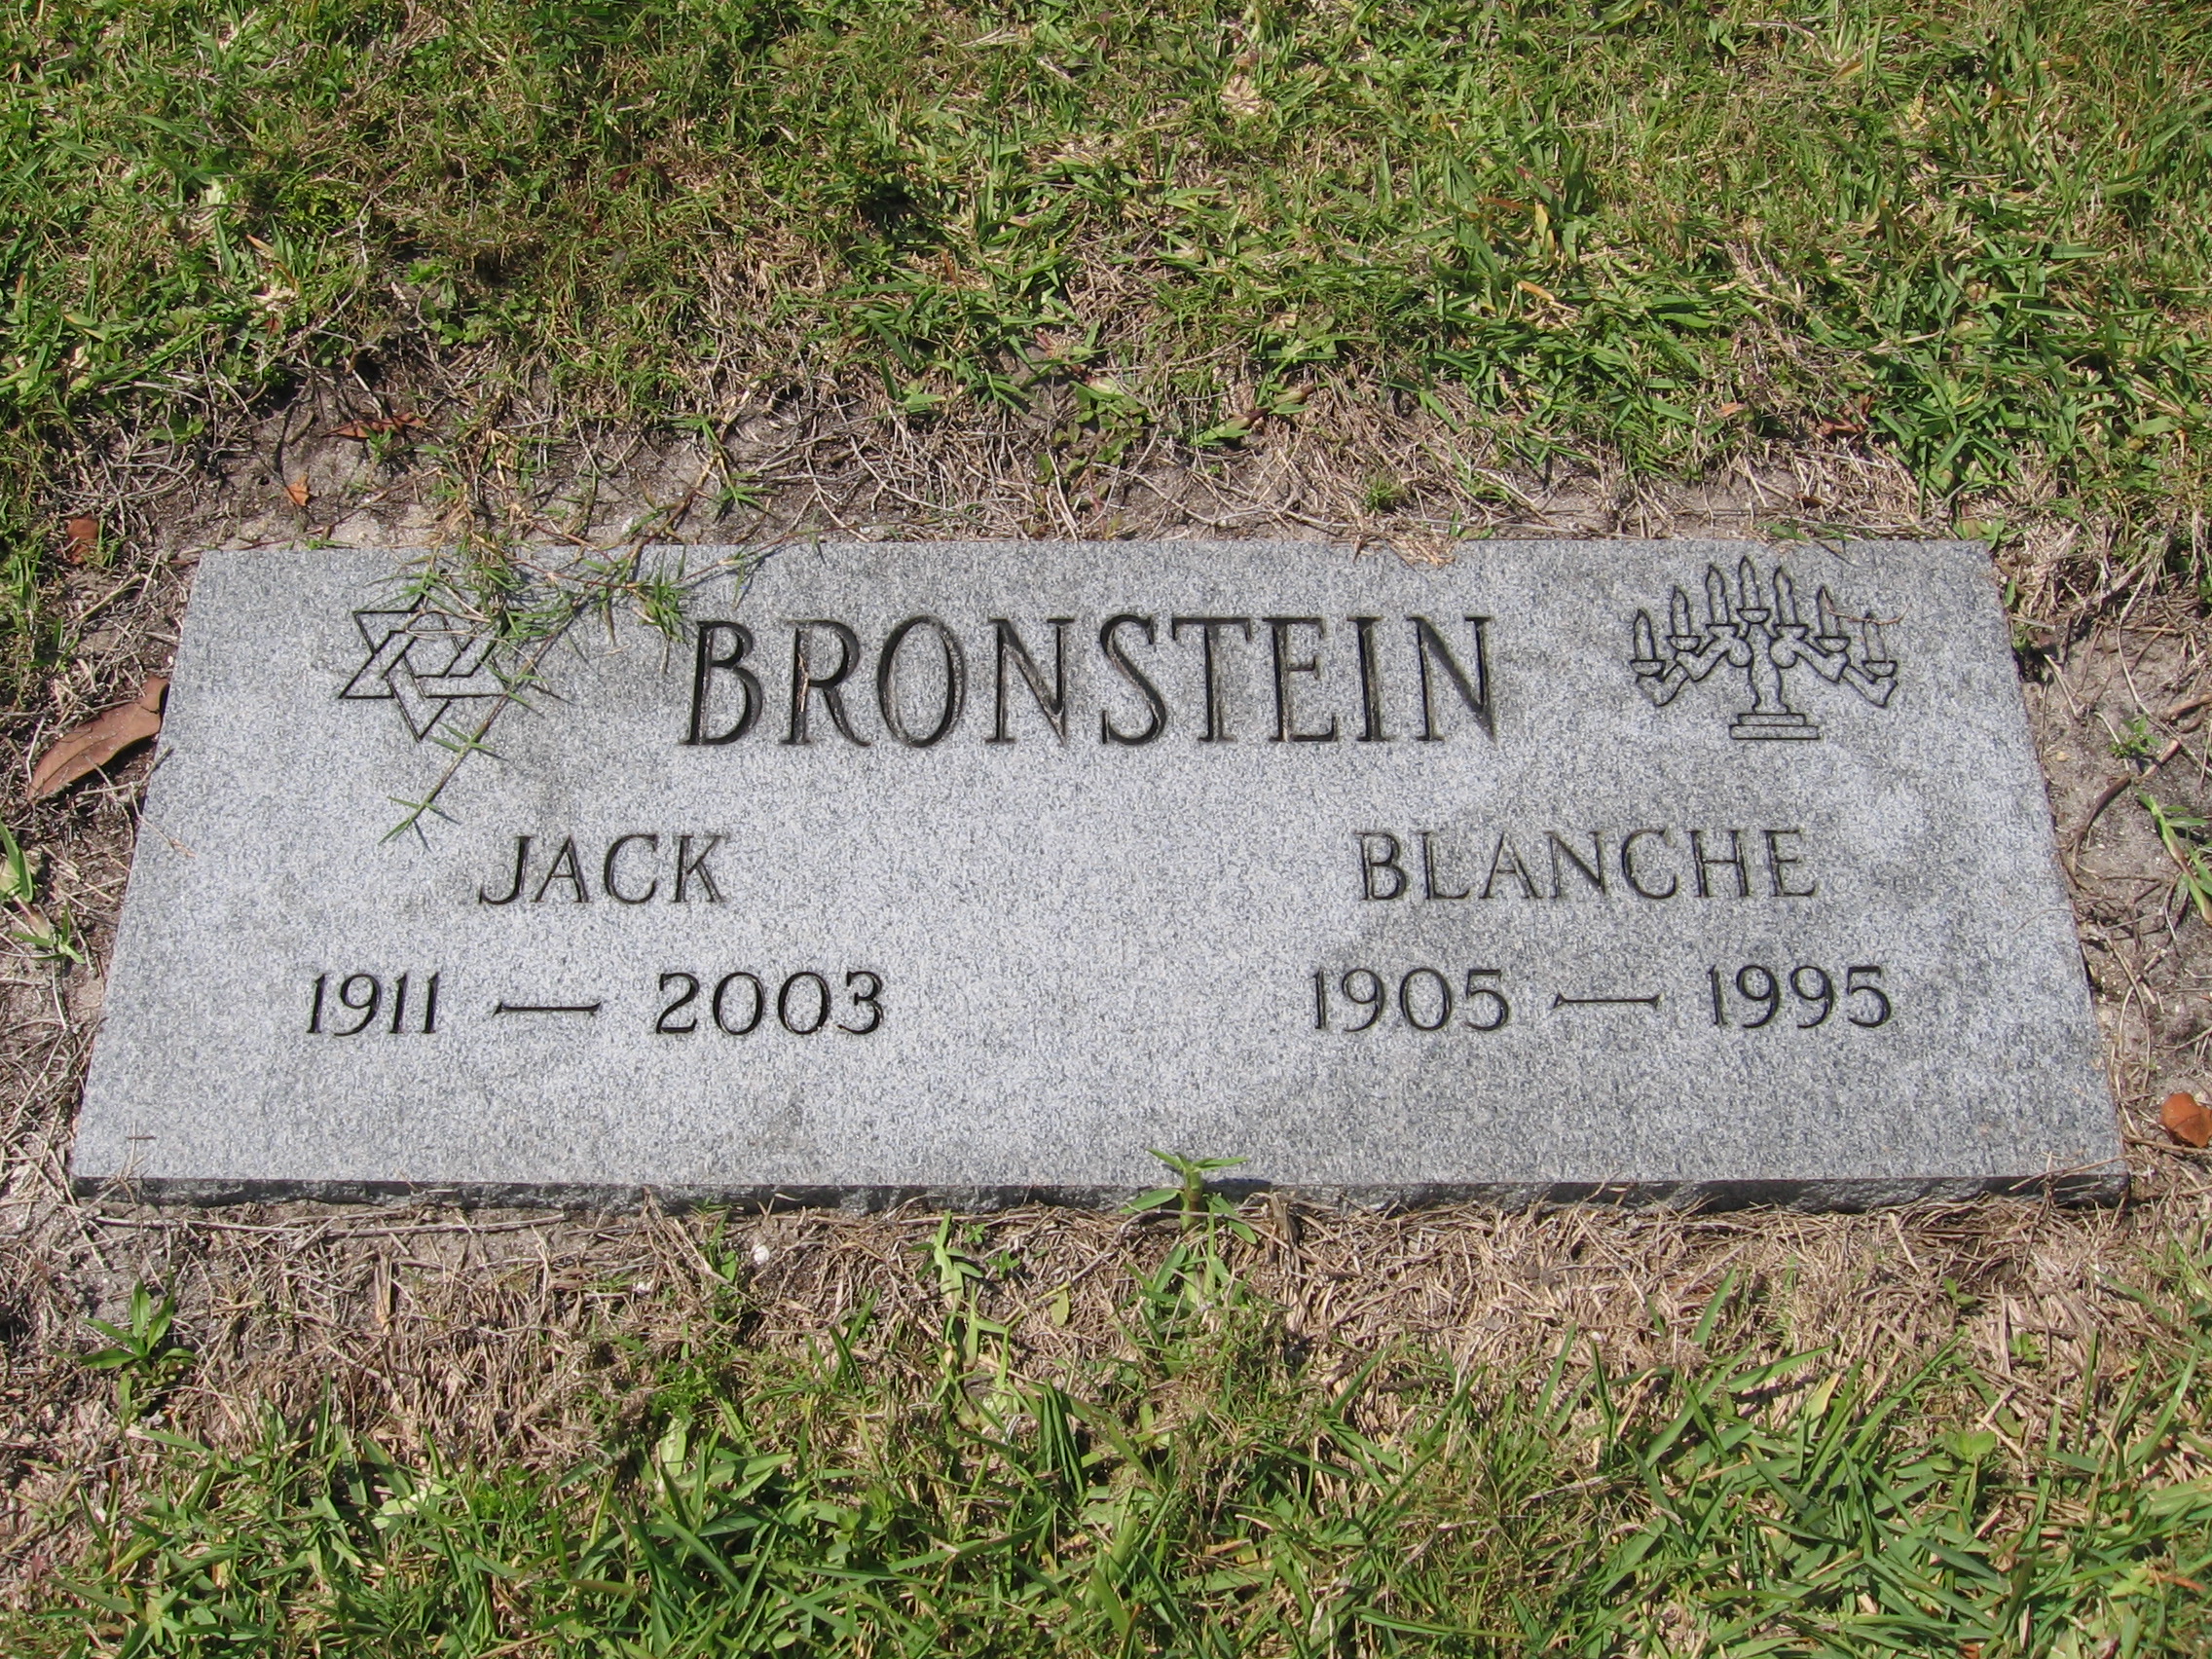 Blanche Bronstein